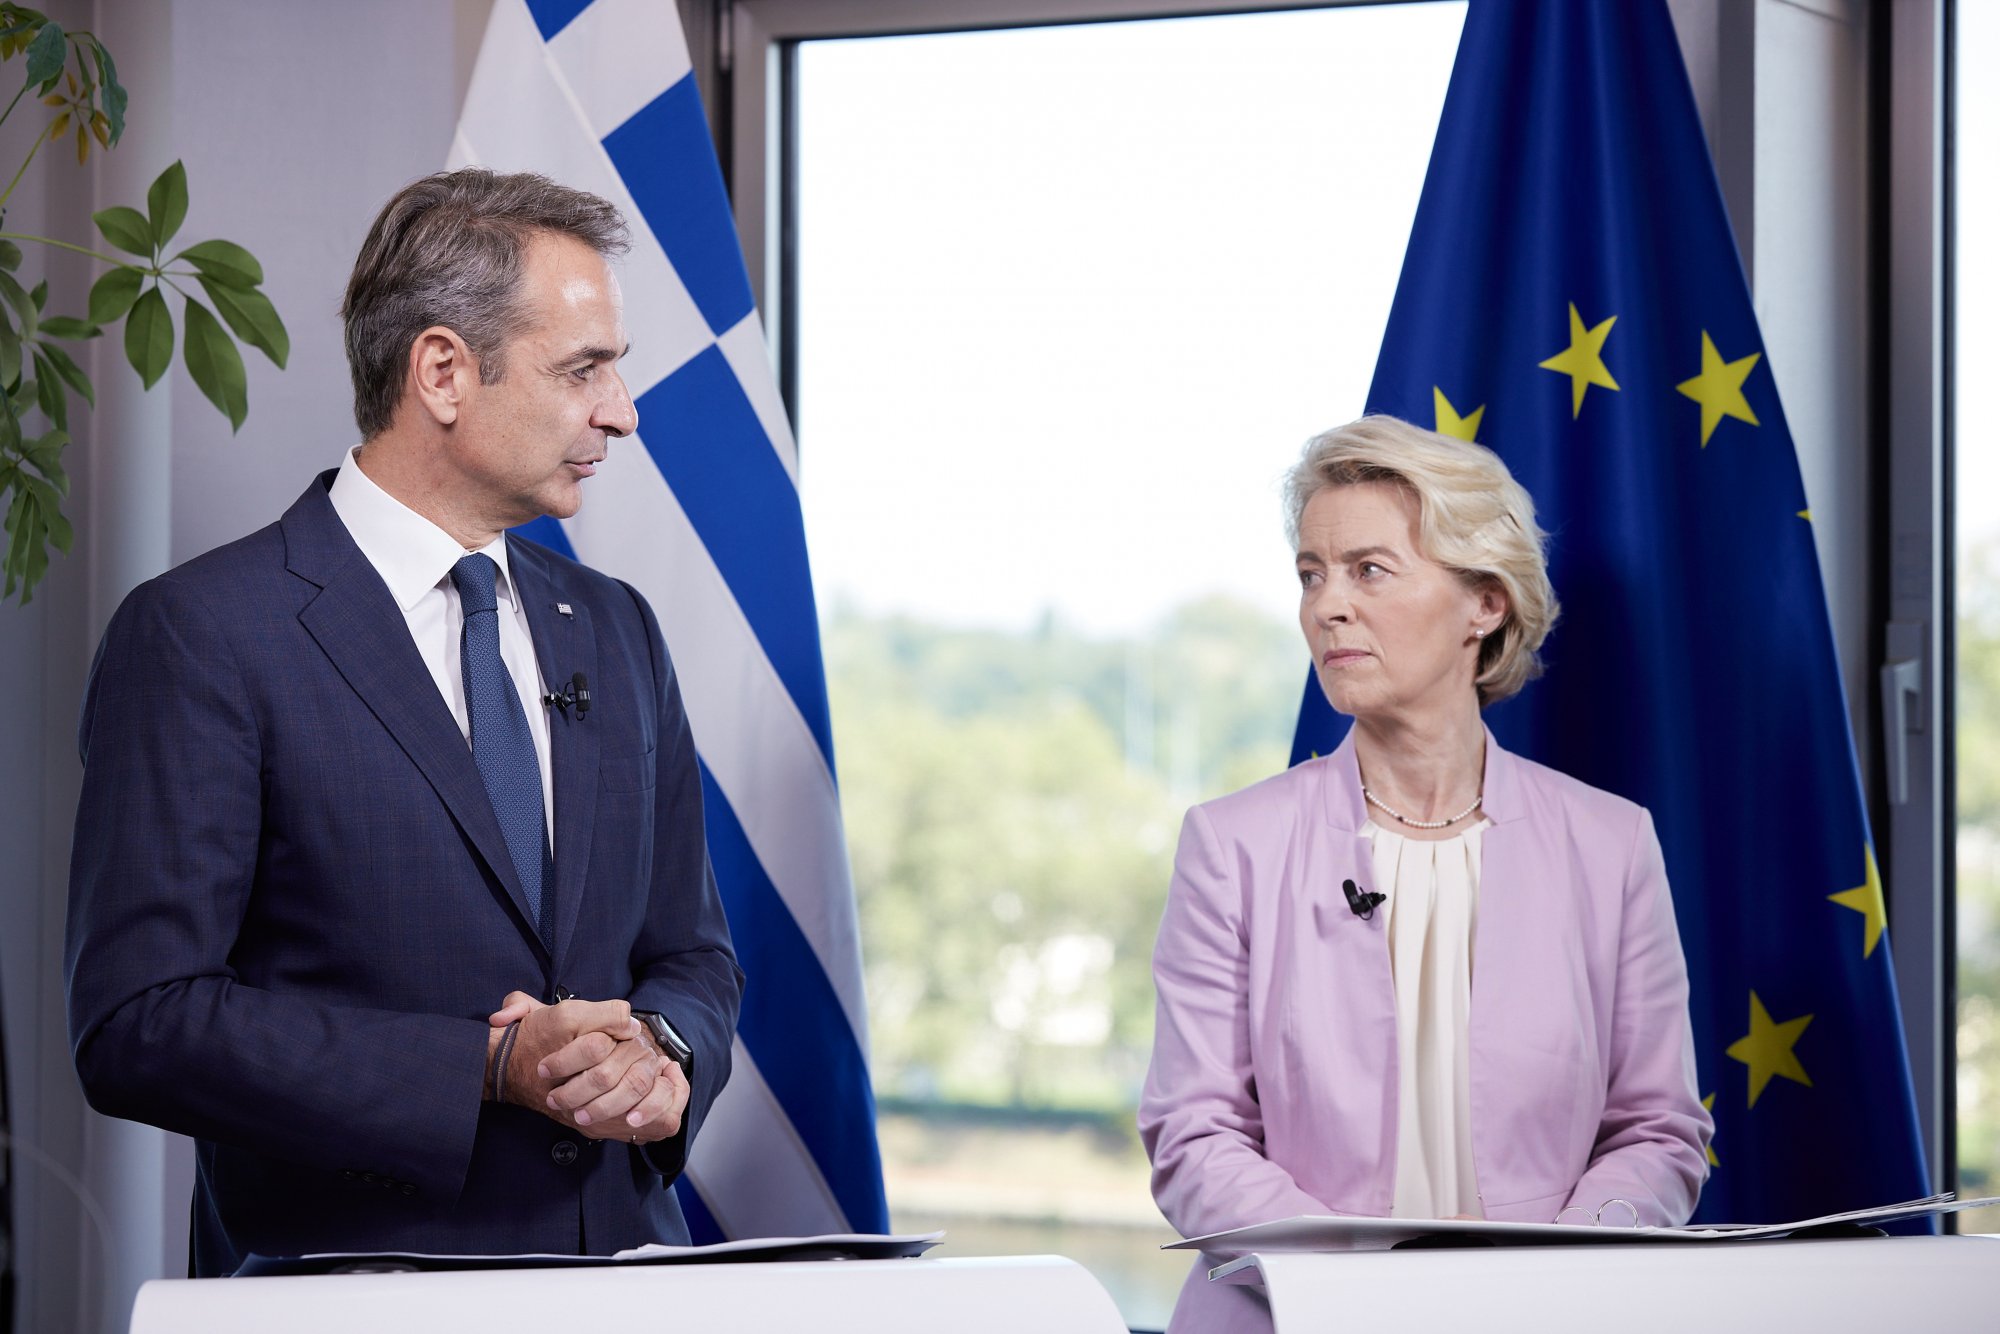 Τον Μητσοτάκη στη θέση της Ούρσουλα προτείνει ο Μισέλ, λέει το Politico - Πώς οι «καρέκλες» στην ΕΕ επηρεάζουν την Ελλάδα